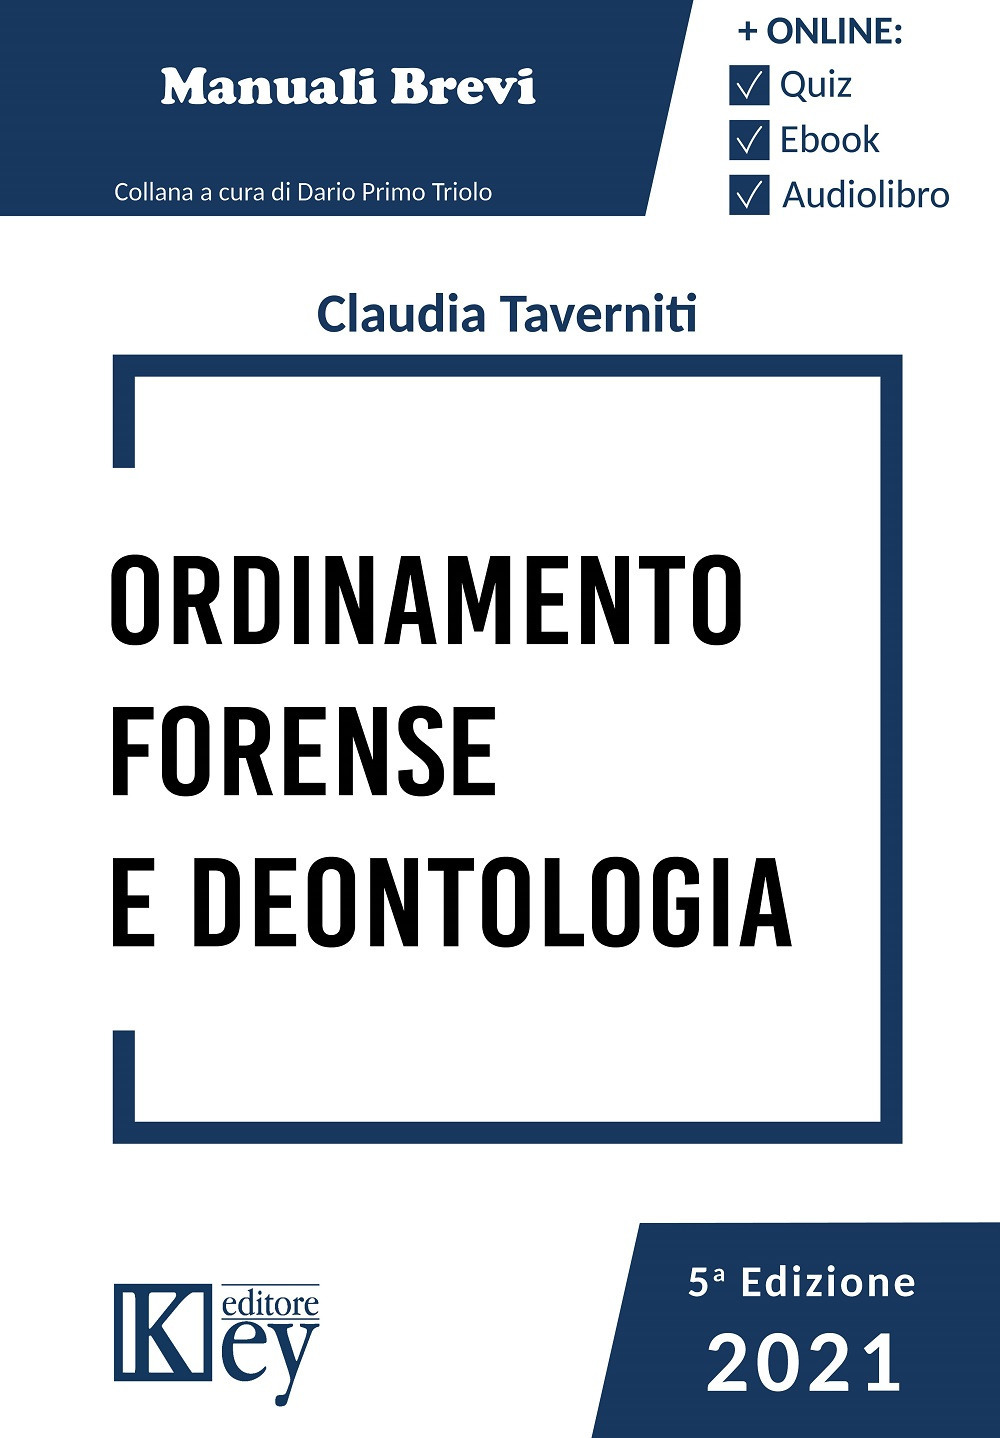 Libri Taverniti Claudia - Ordinamento Forense E Deontologia 2021. Con Espansione Online NUOVO SIGILLATO, EDIZIONE DEL 05/11/2021 SUBITO DISPONIBILE